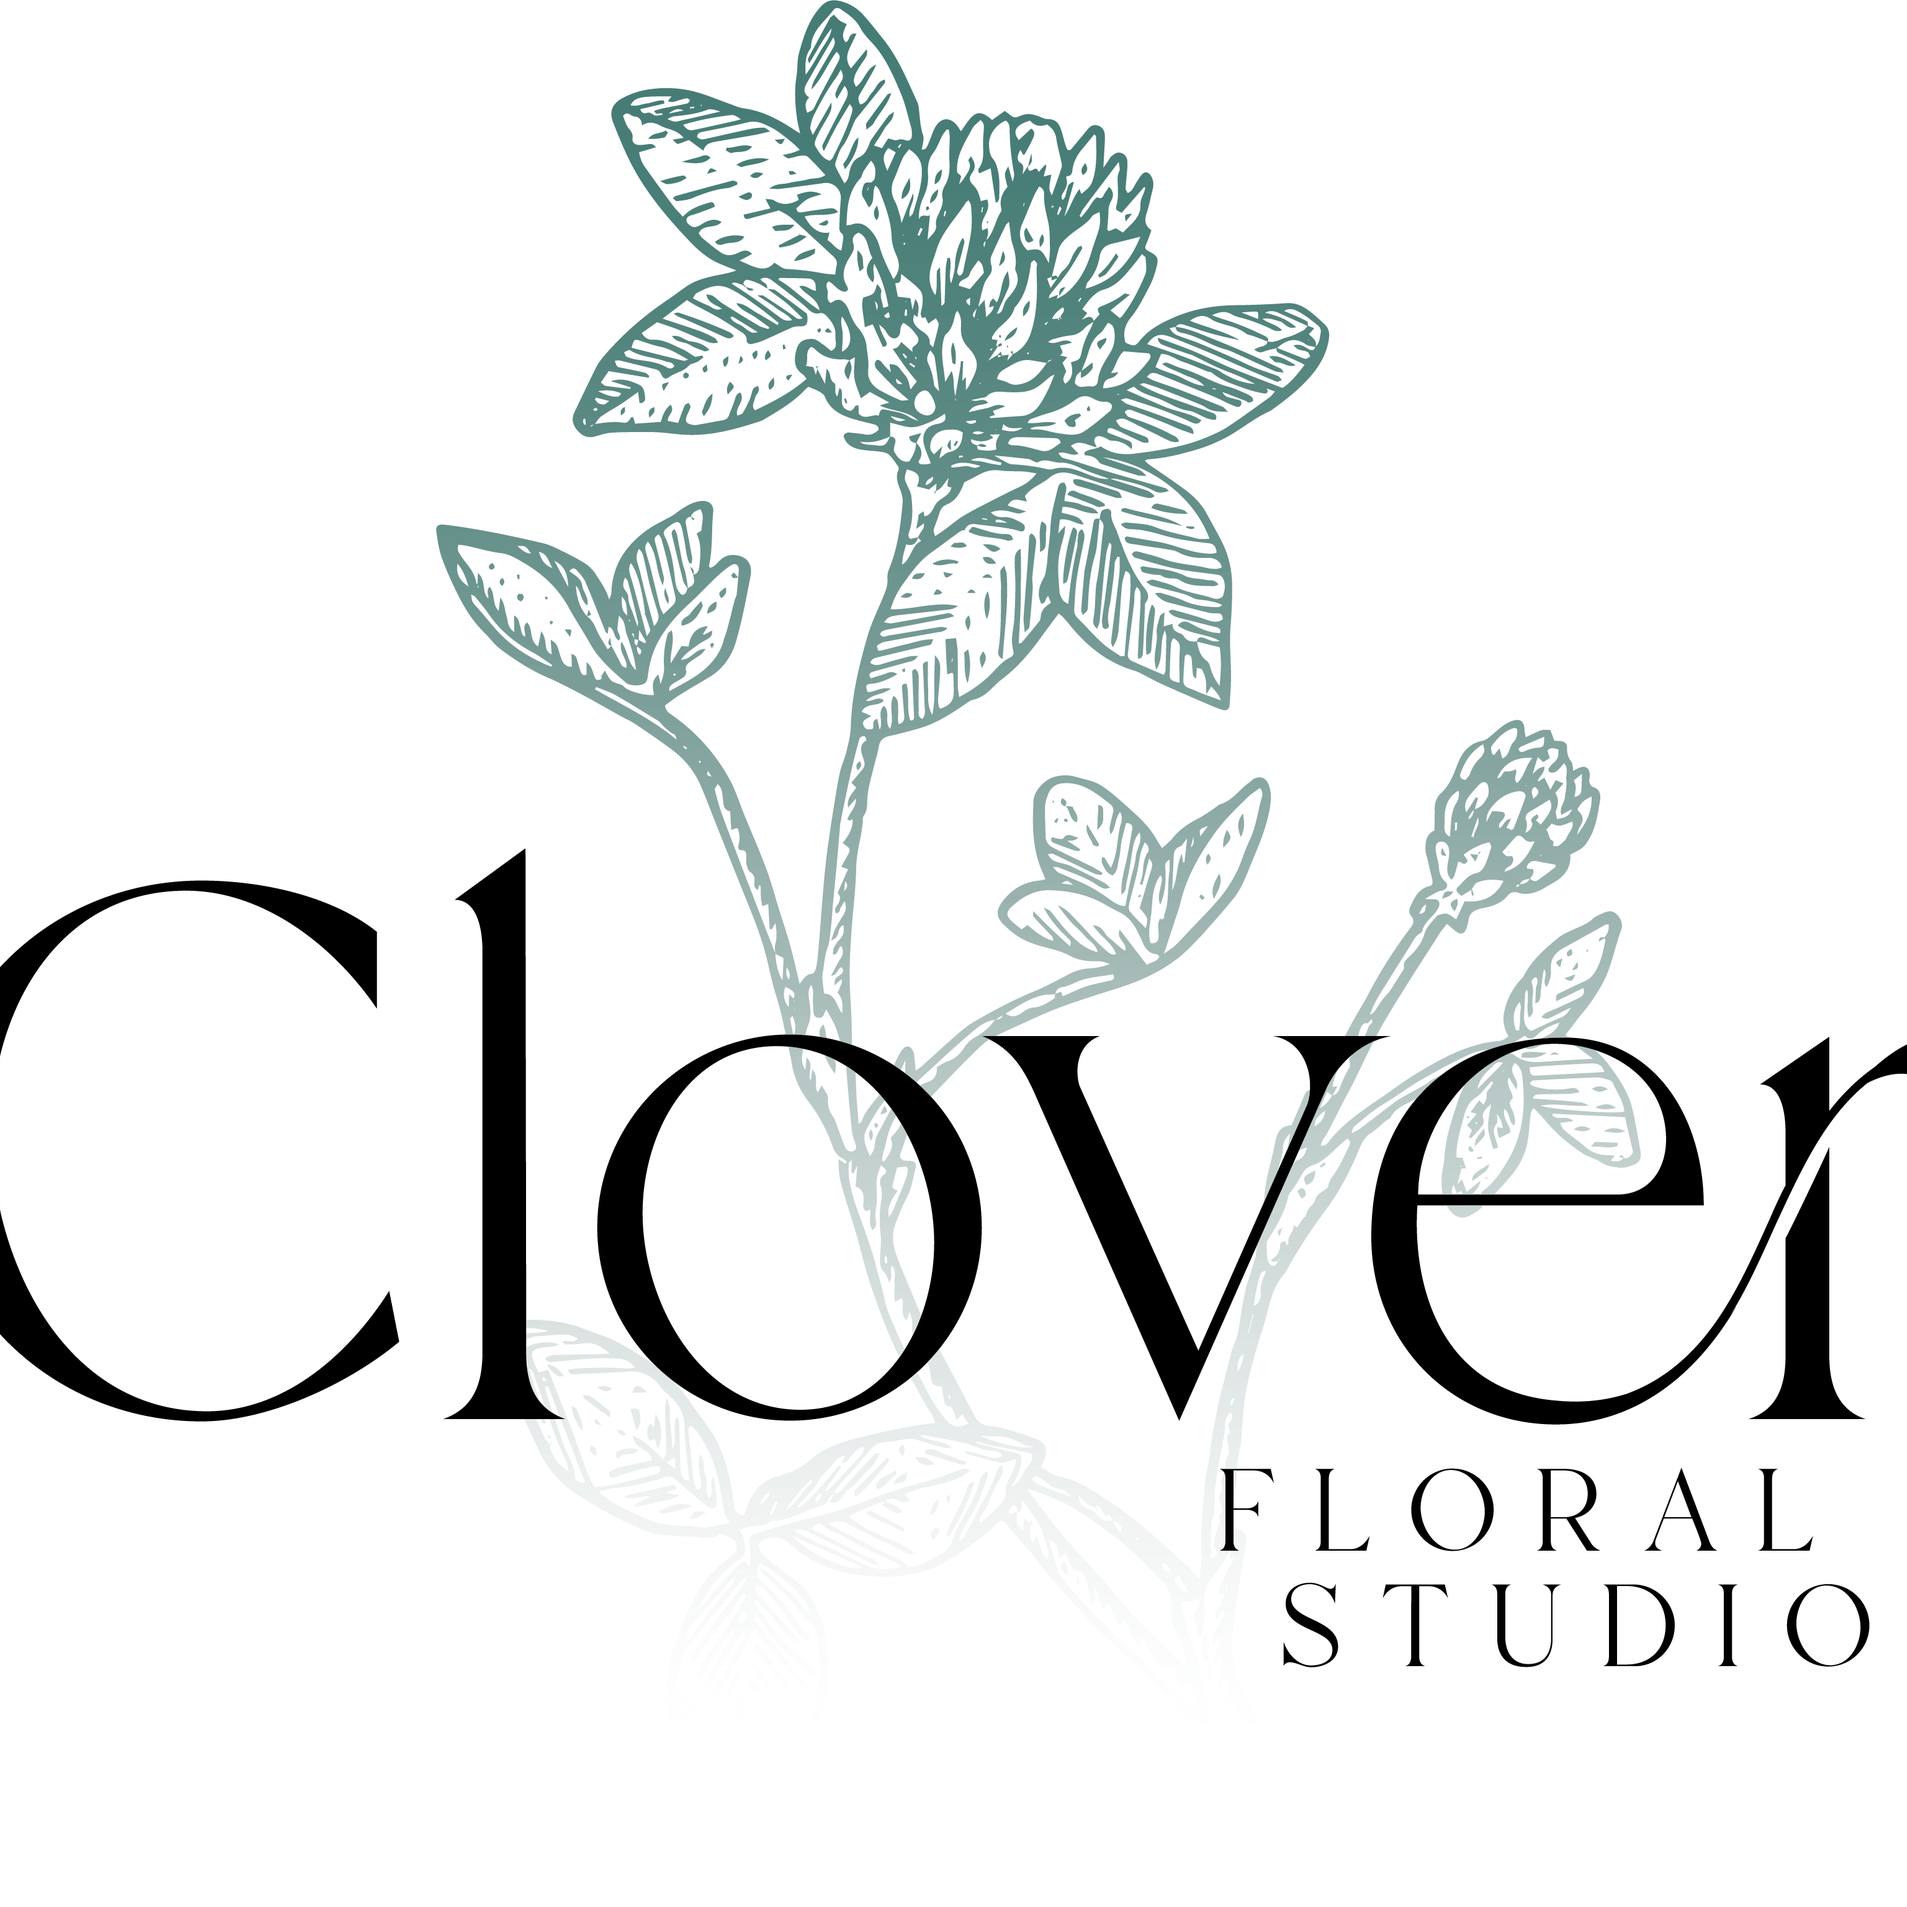 Clover Floral Studio